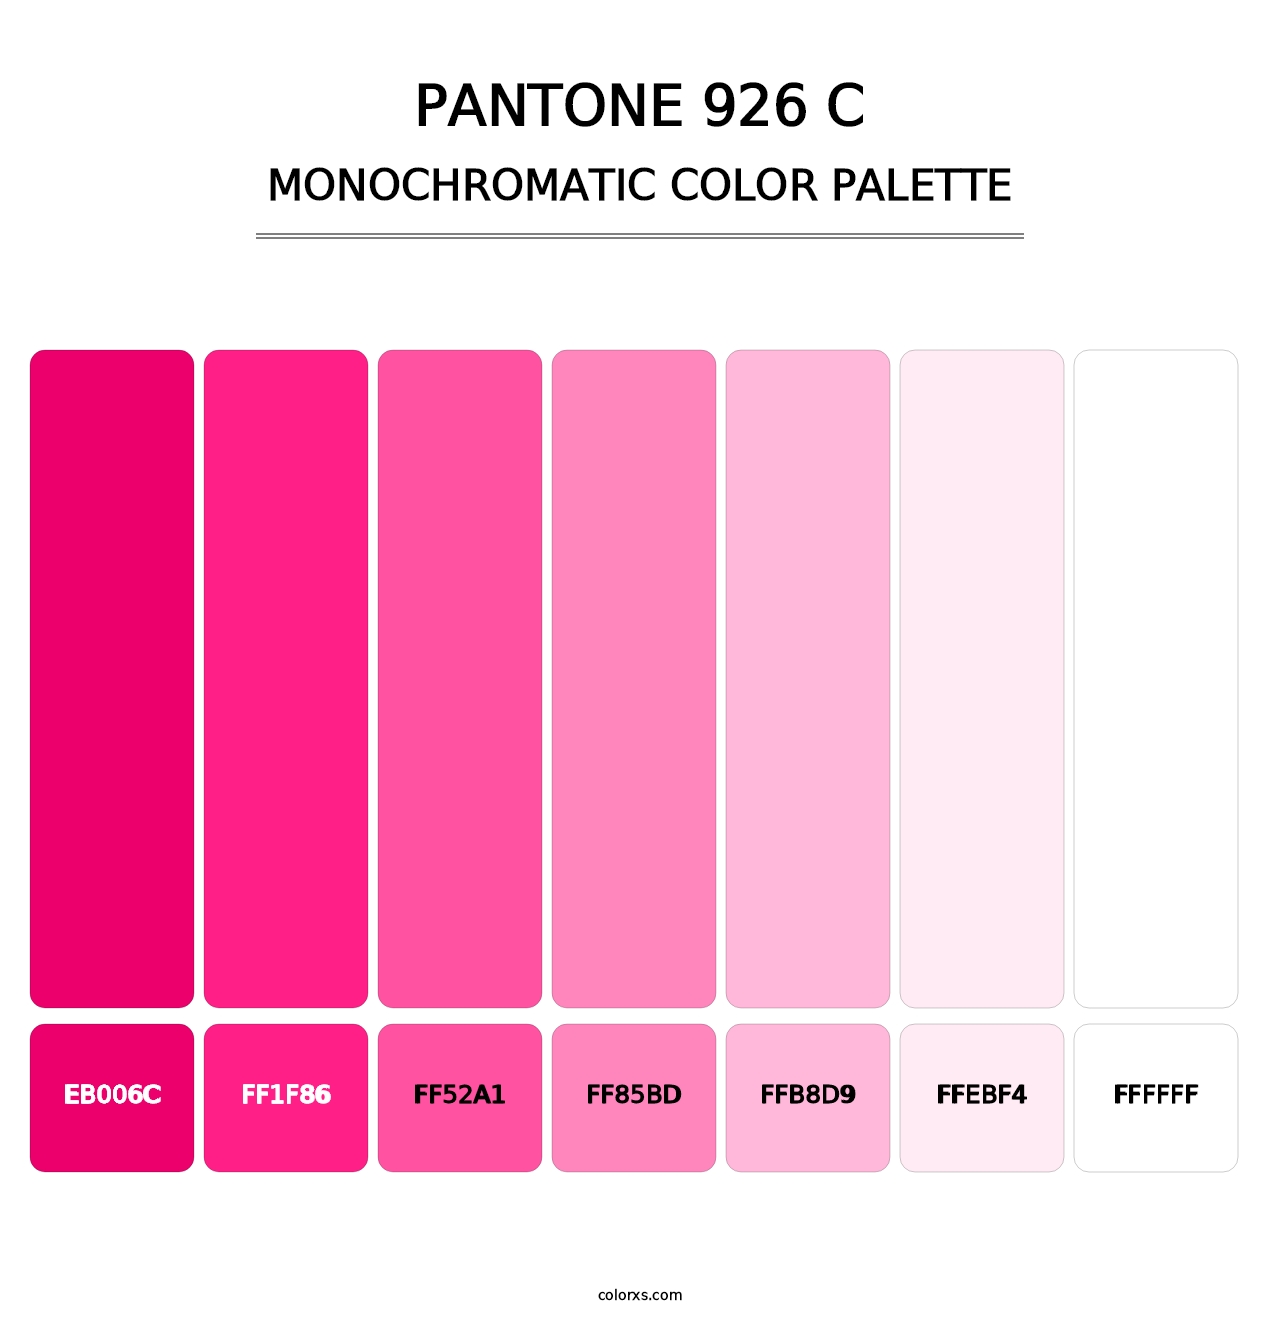 PANTONE 926 C - Monochromatic Color Palette